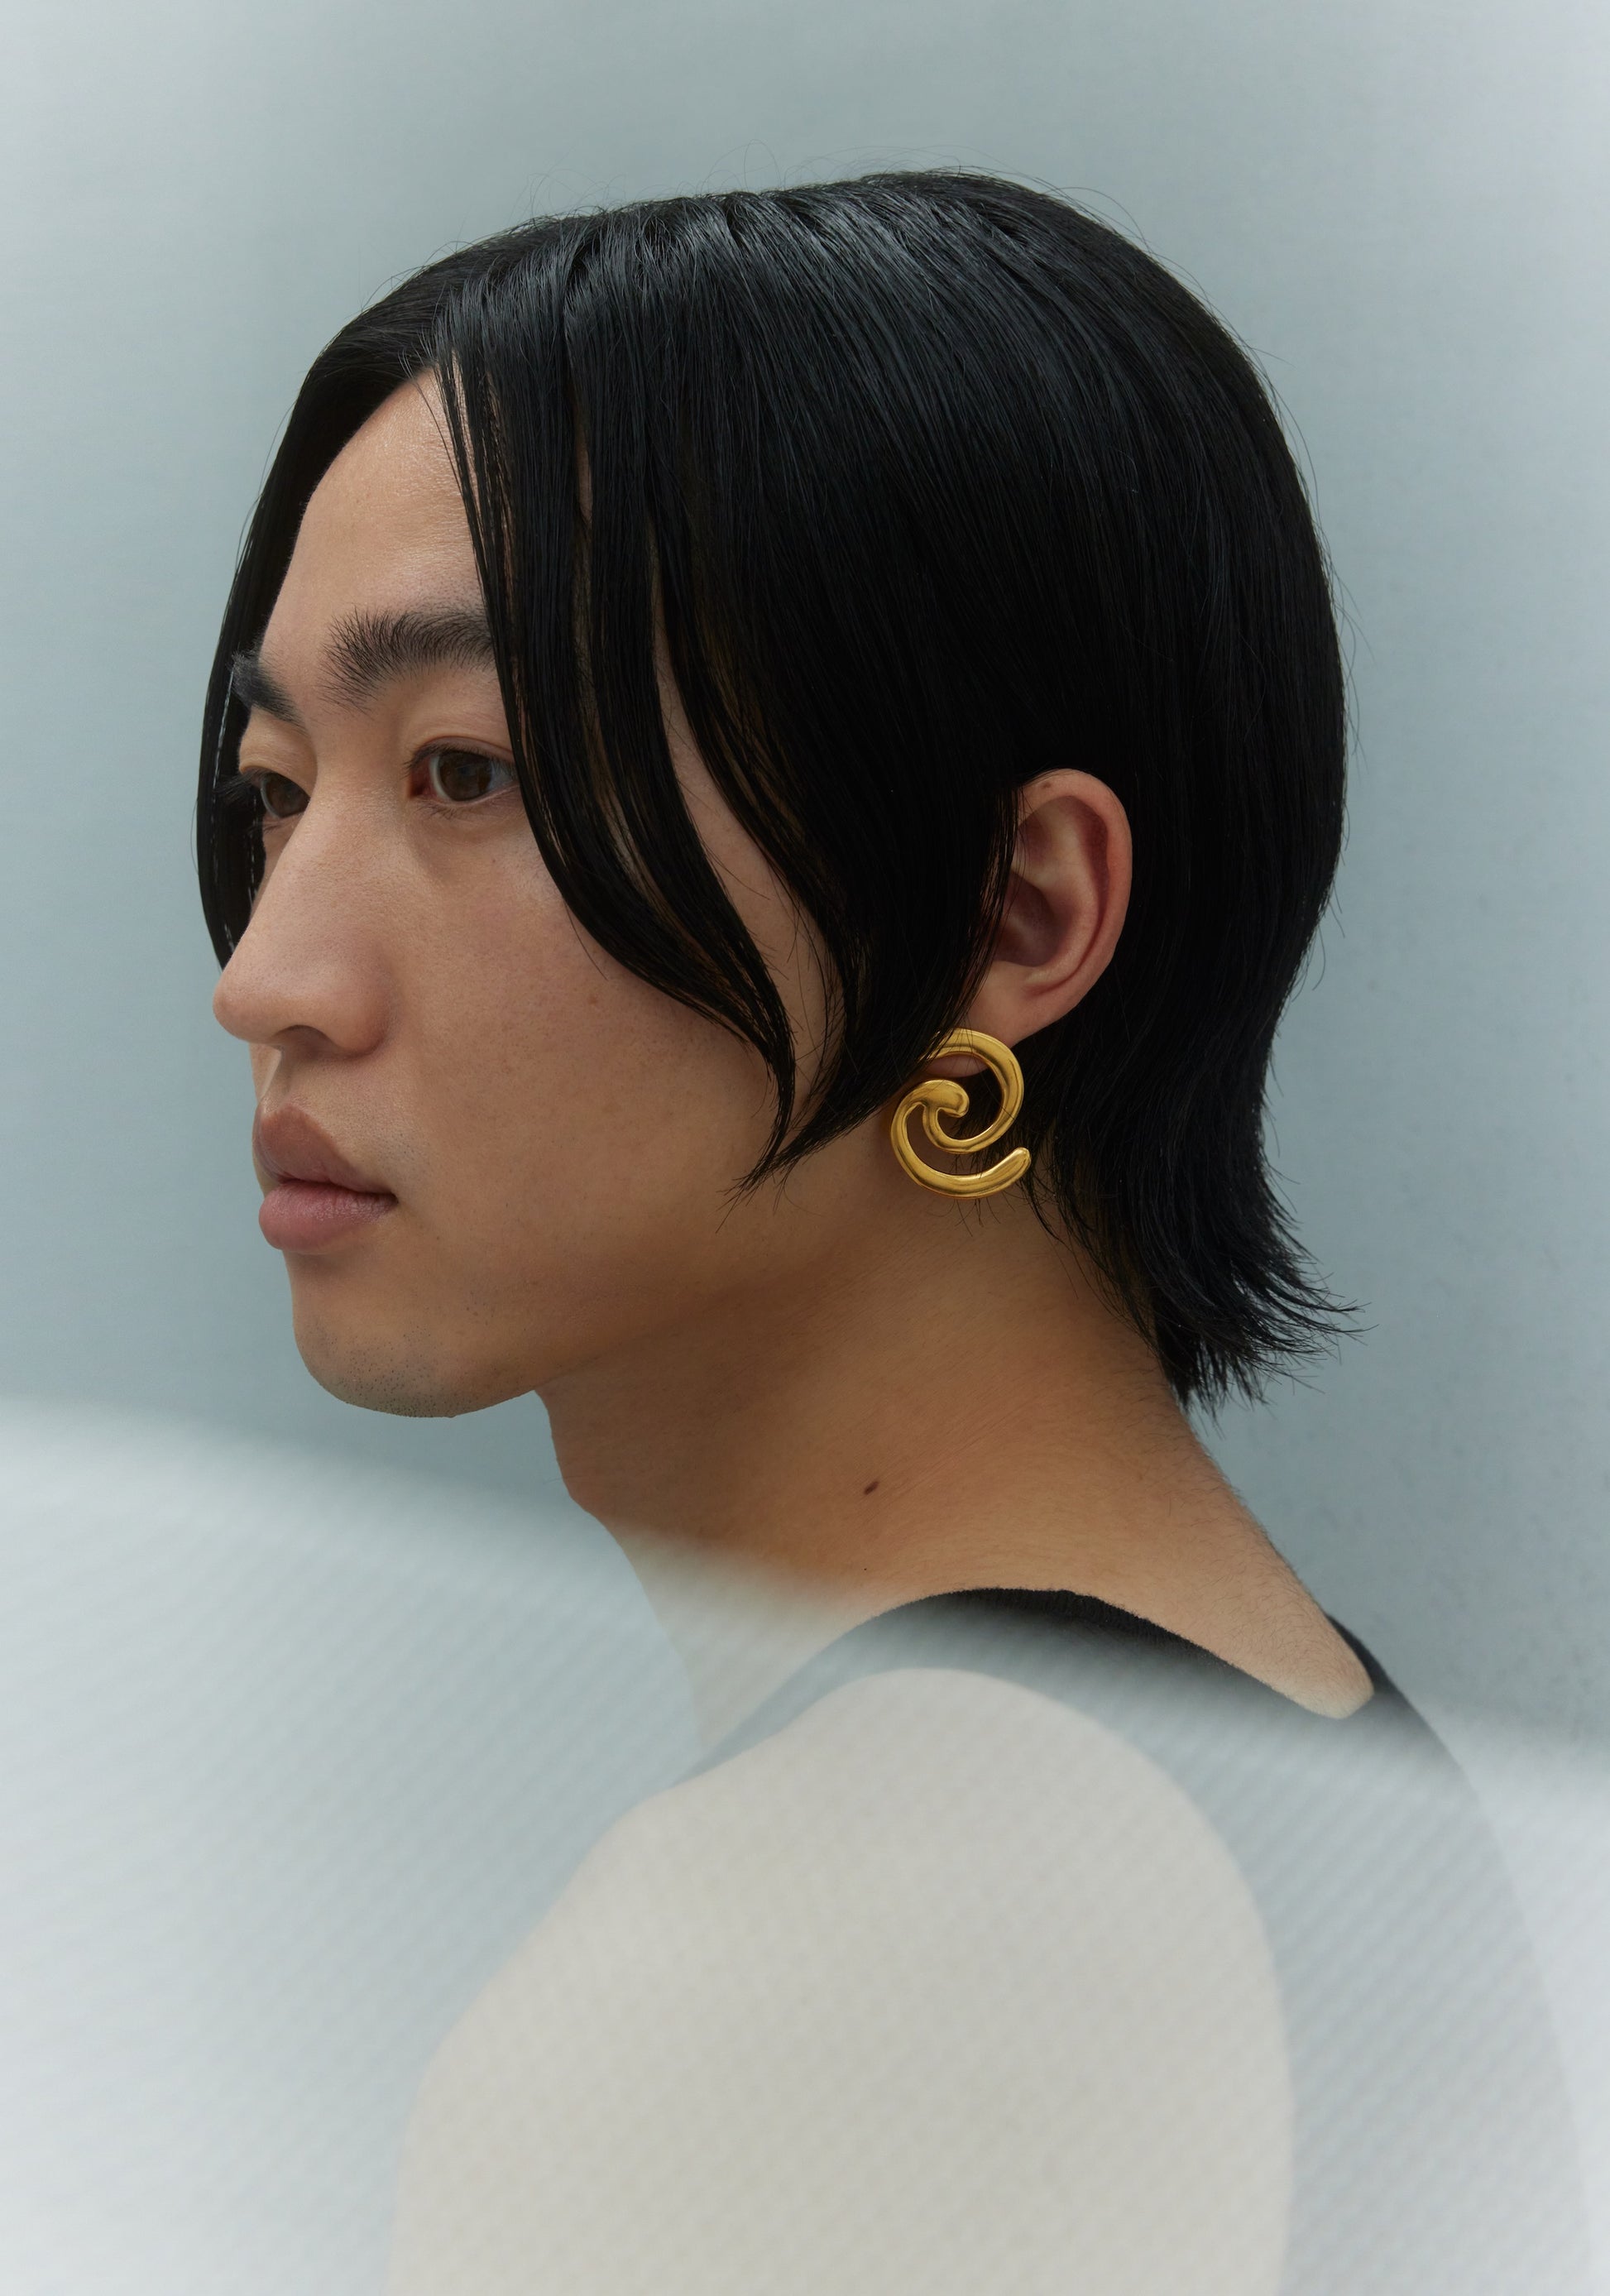 Model wearing gold earring